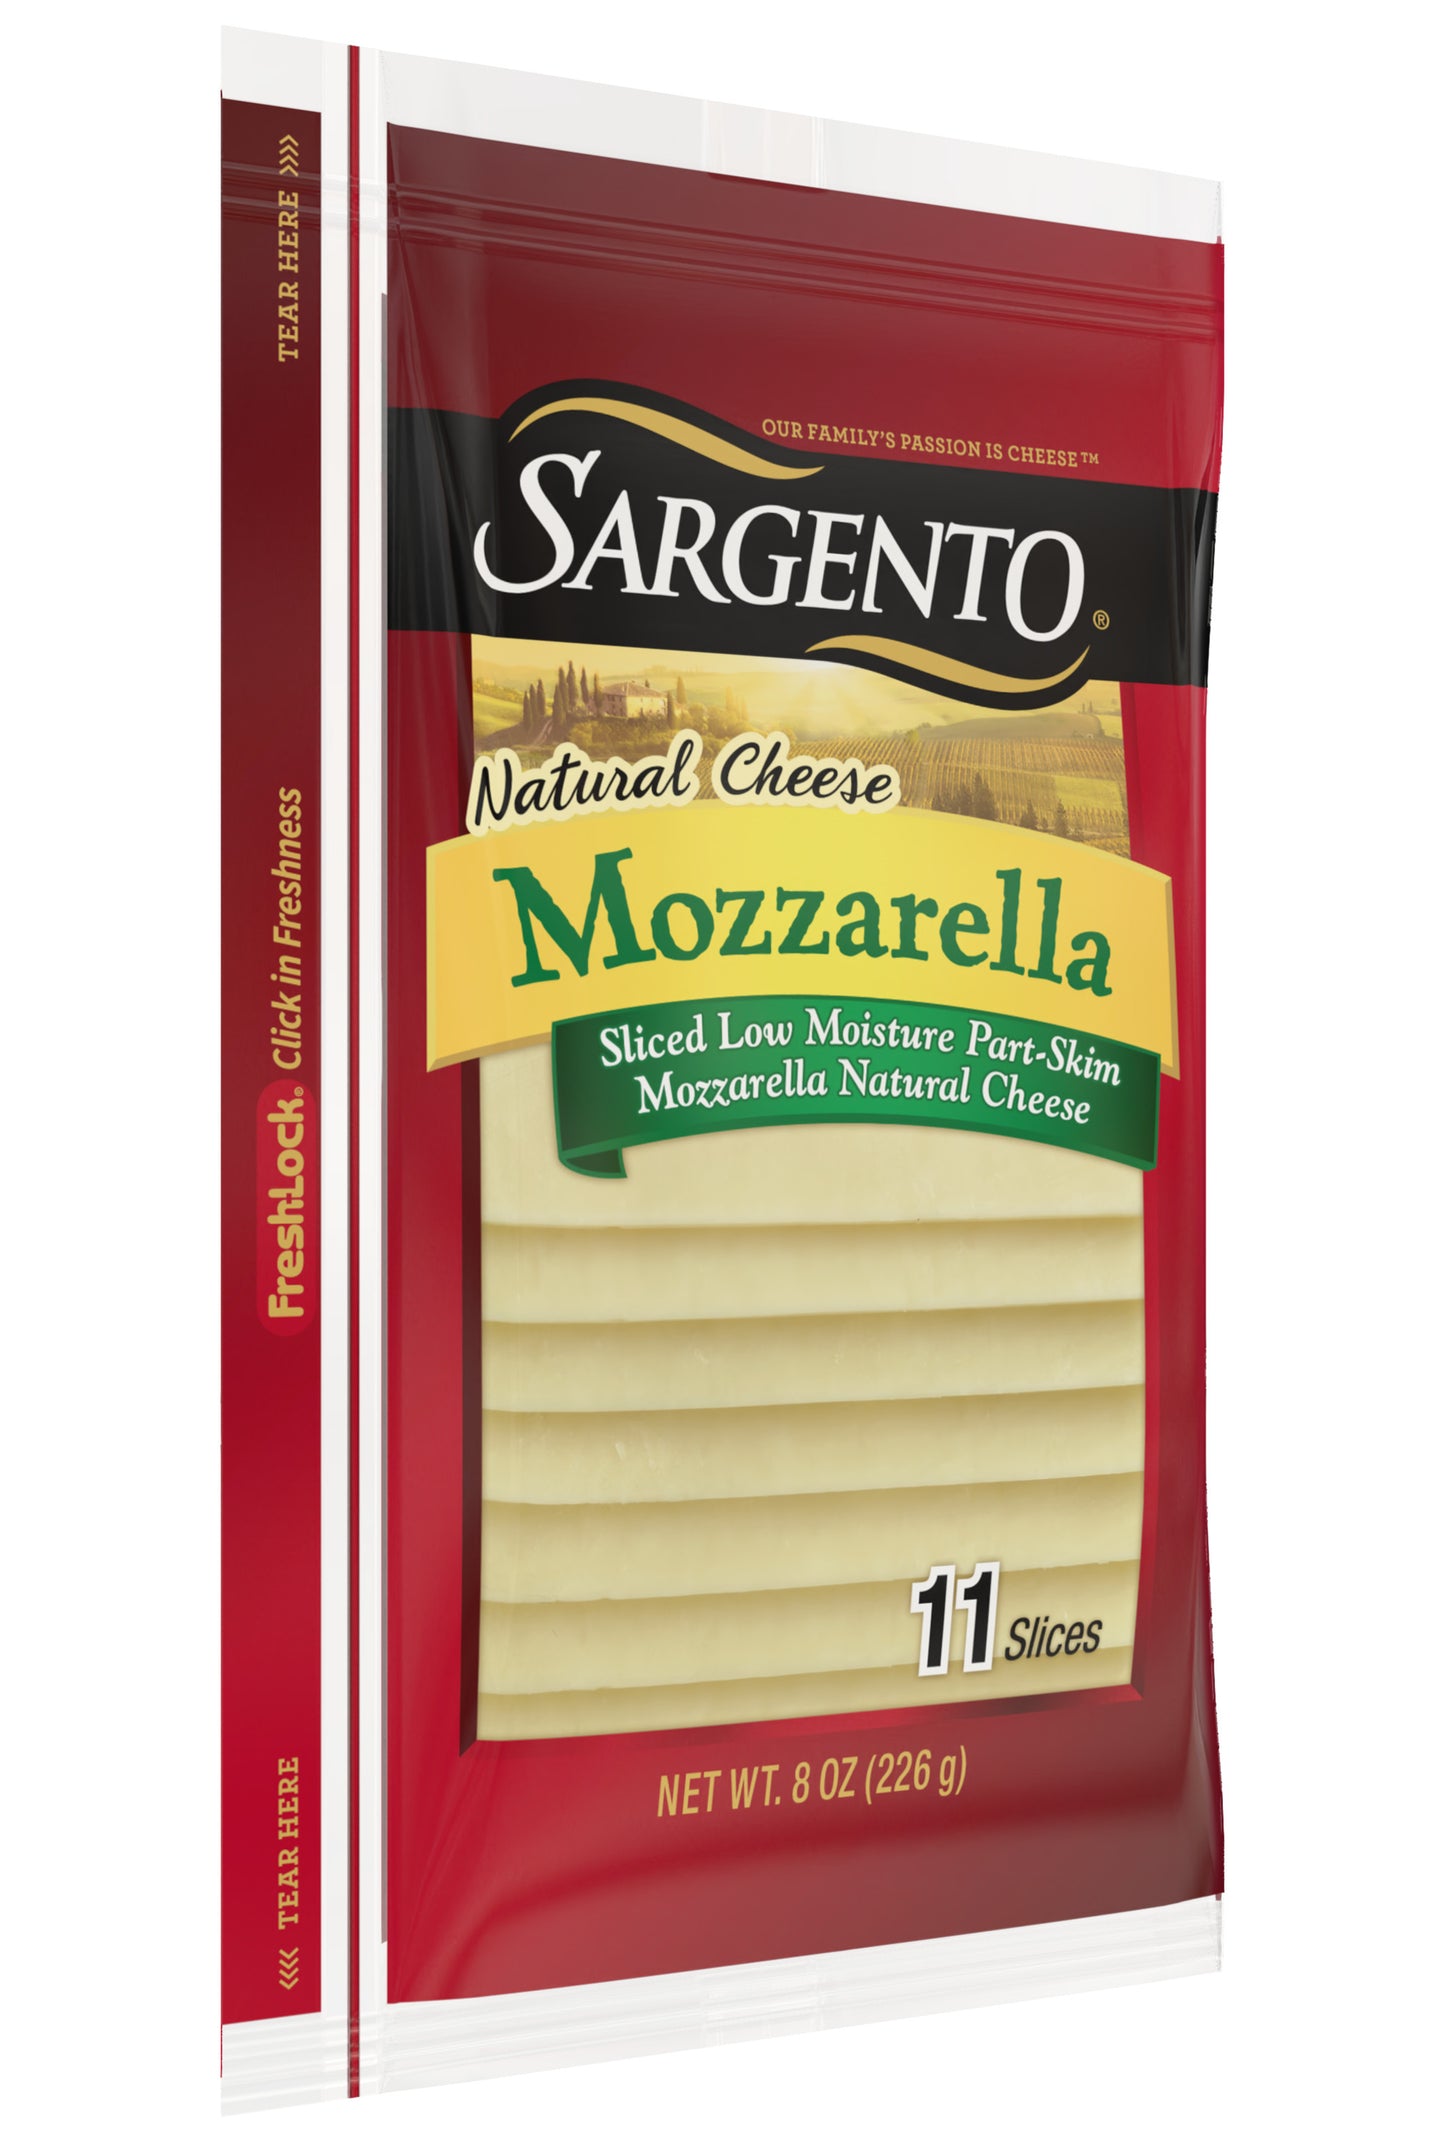 Sargento Sliced Mozzarella Natural Cheese, 11 Slices